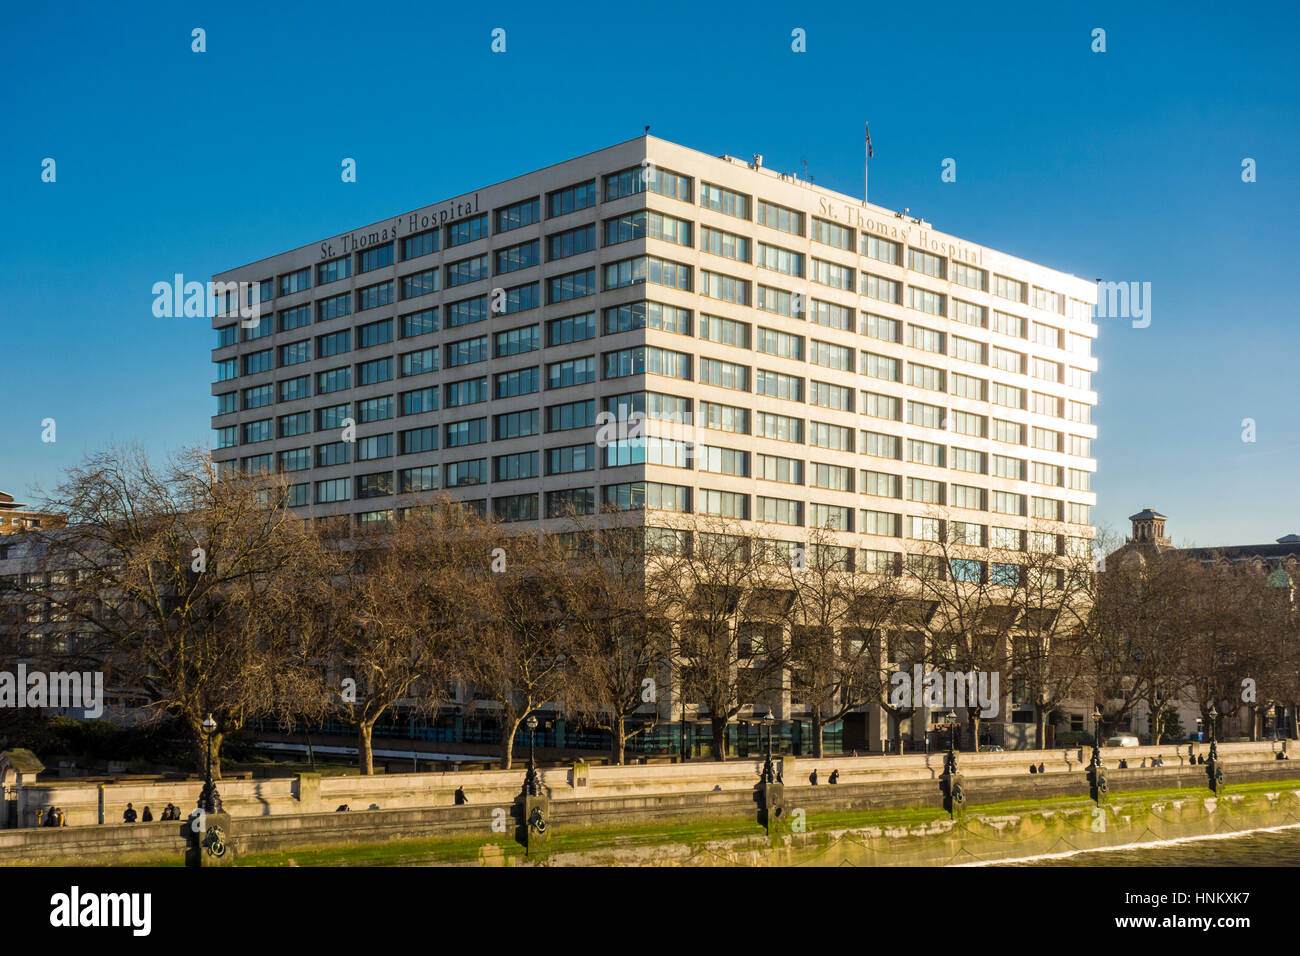 Helles Sonnenlicht auf der Seite des St. Thomas' Hospital Gebäude, London, UK Stockfoto